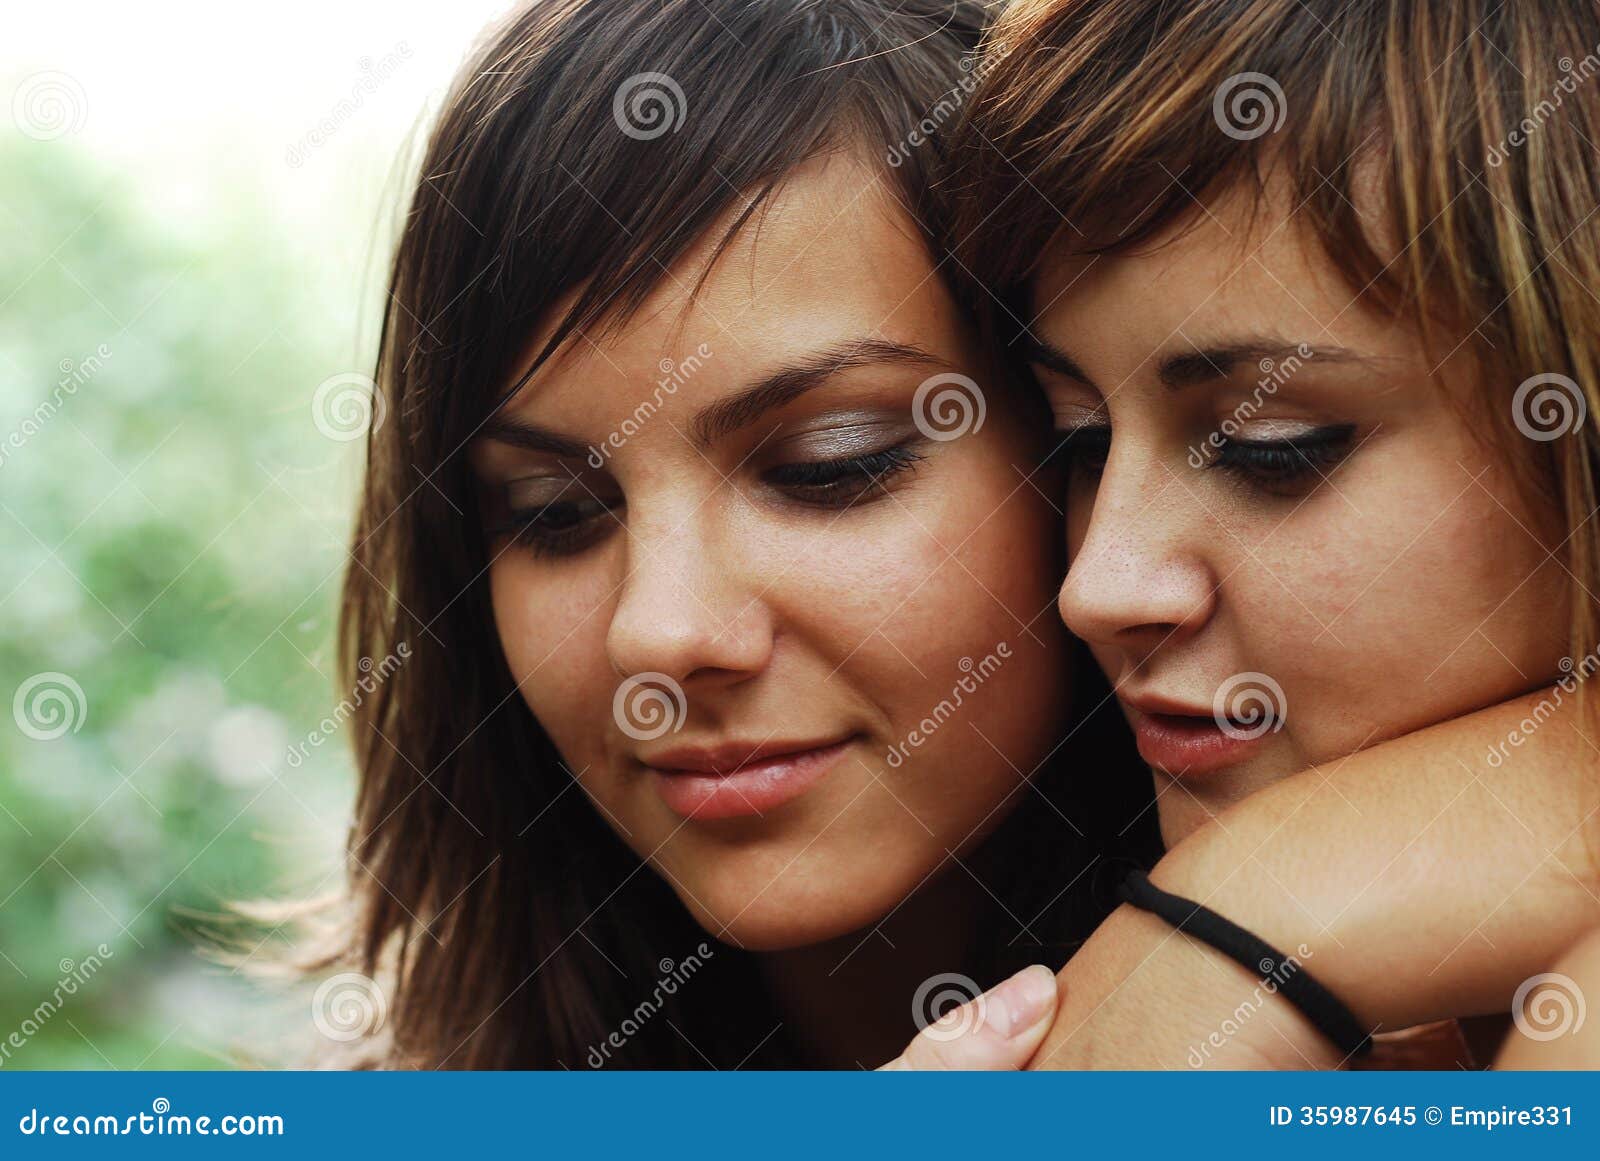 同性恋 图片、库存照片和矢量图 | Shutterstock